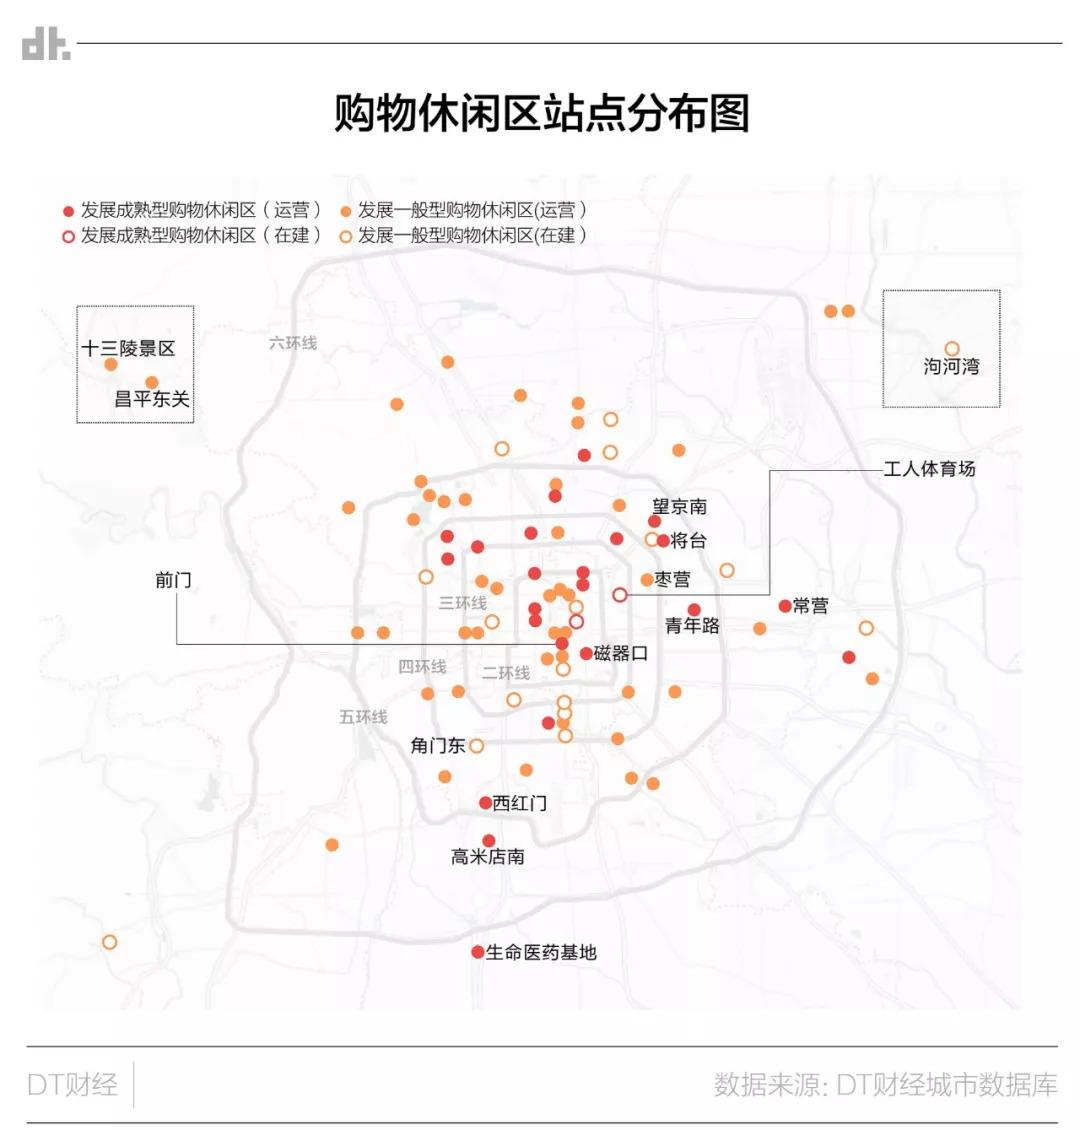 重新认识地铁上的北京②:王府井、西单、国贸